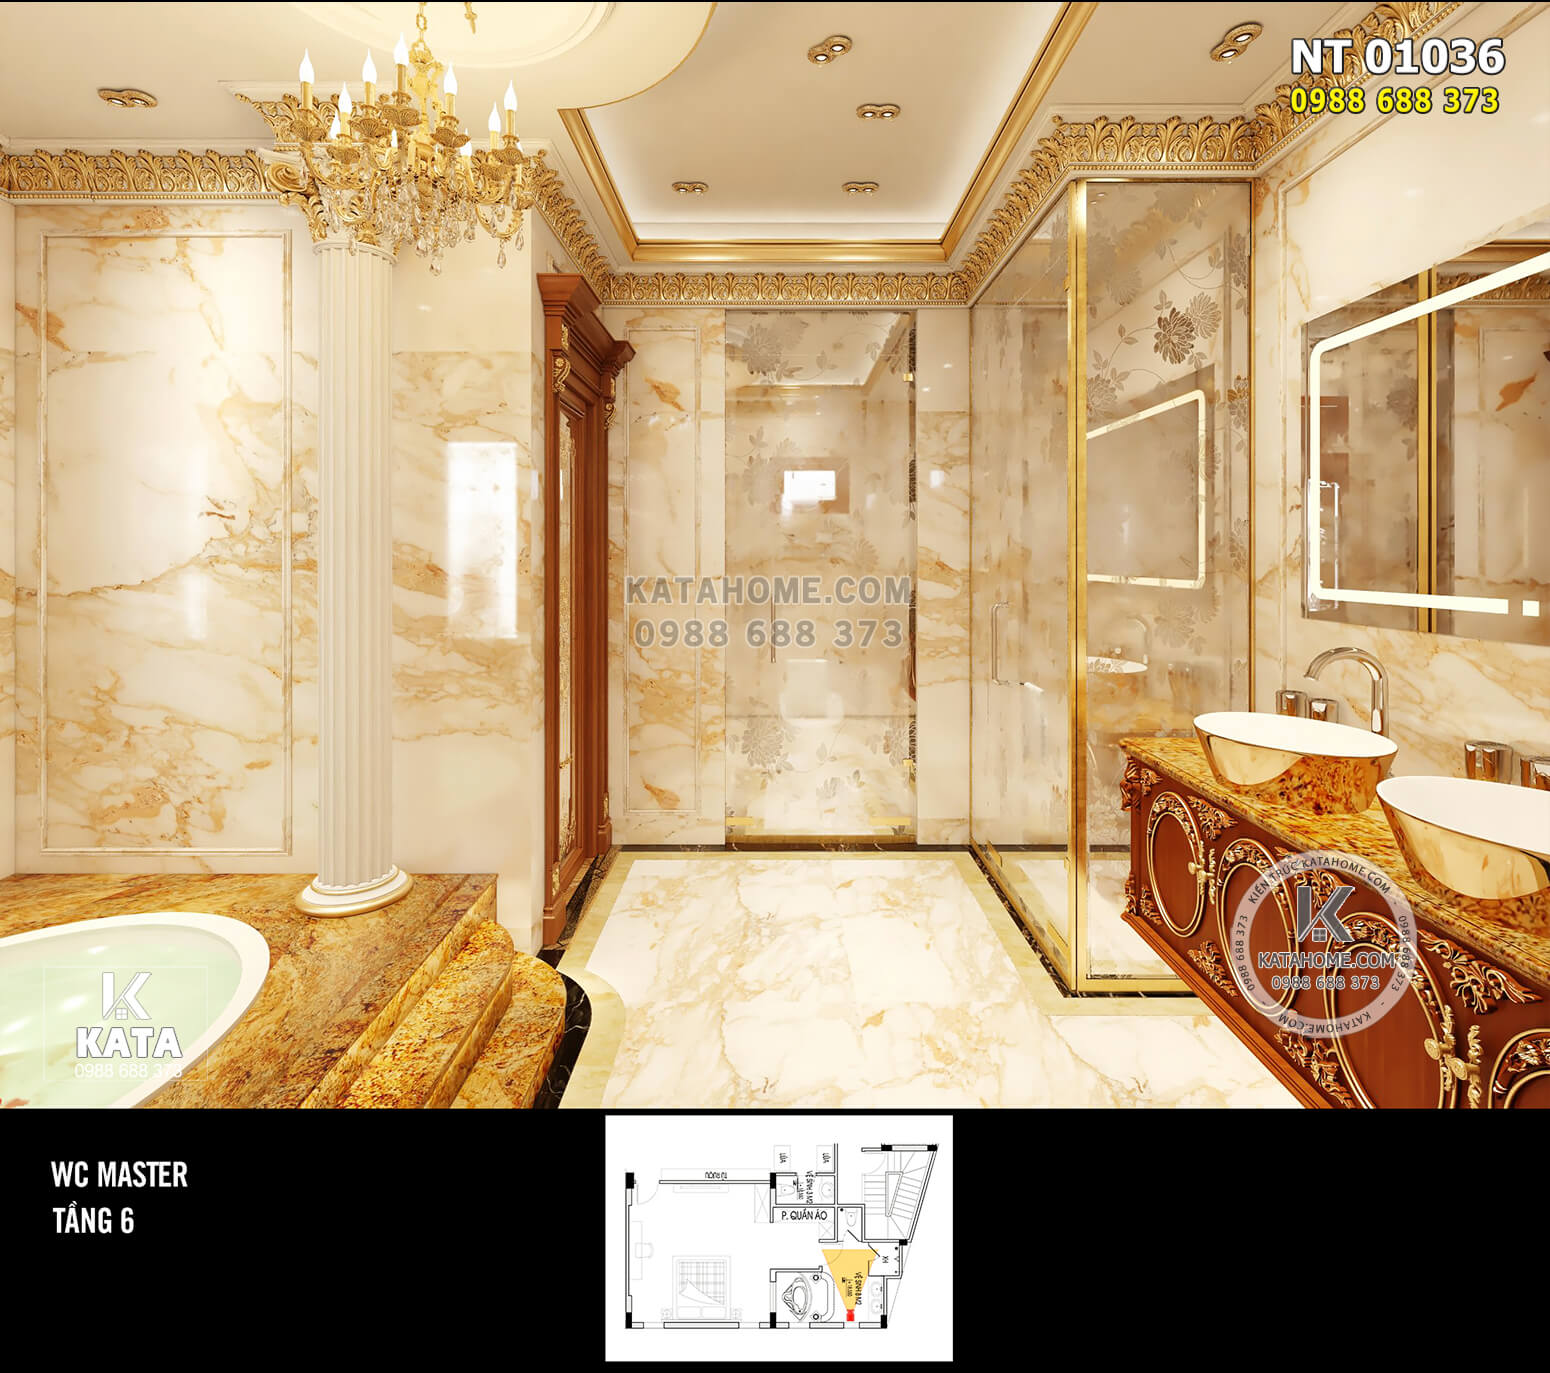 Hình ảnh: Không gian phòng WC được thiết kế mang đẳng cấp hoàng gia